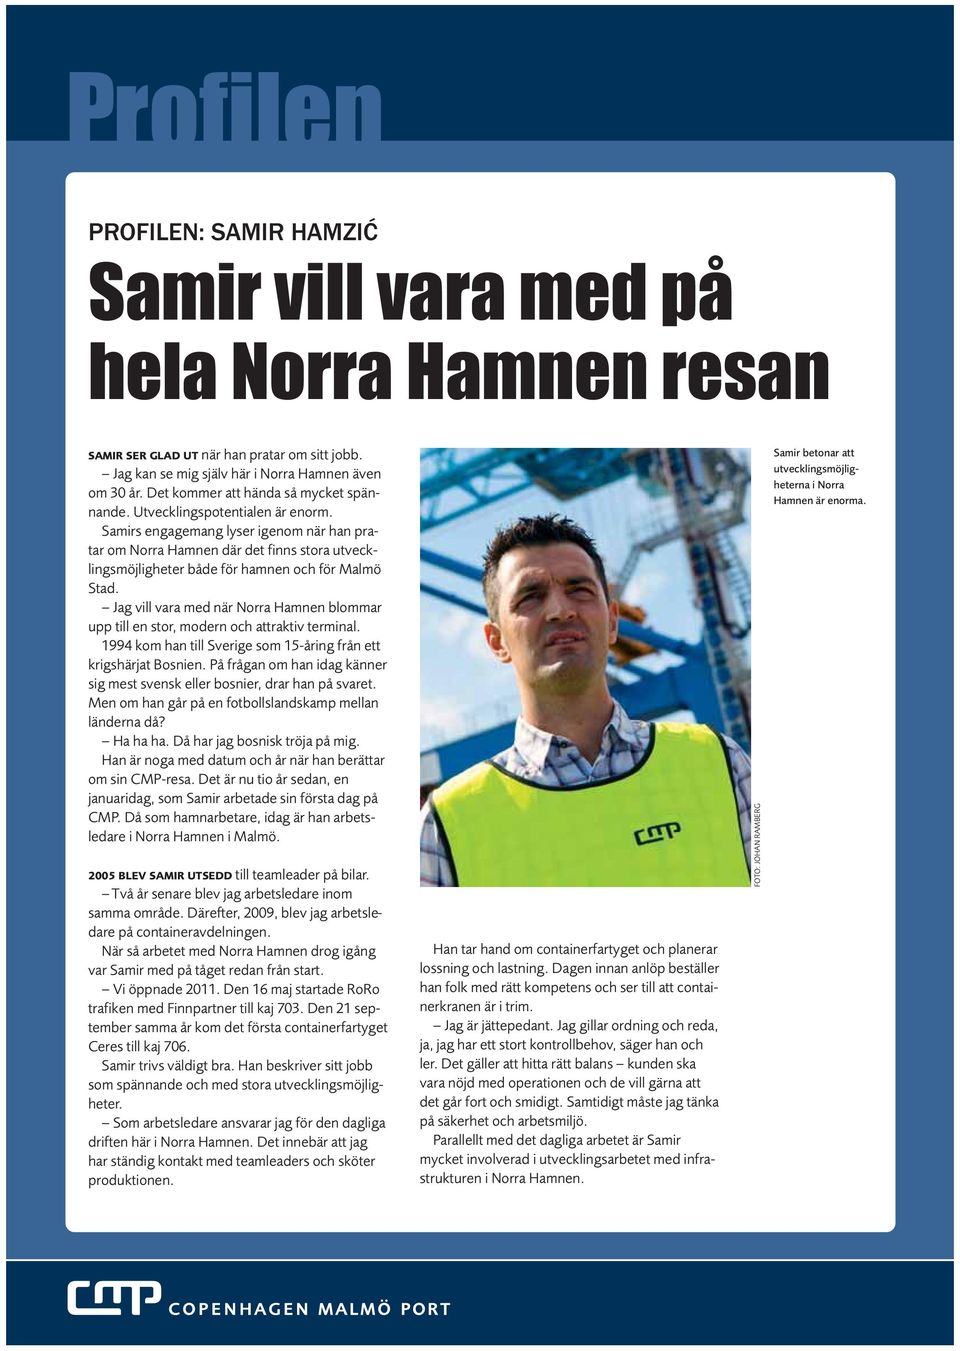 Samirs engagemang lyser igenom när han pratar om Norra Hamnen där det finns stora utvecklingsmöjligheter både för hamnen och för Malmö Stad.